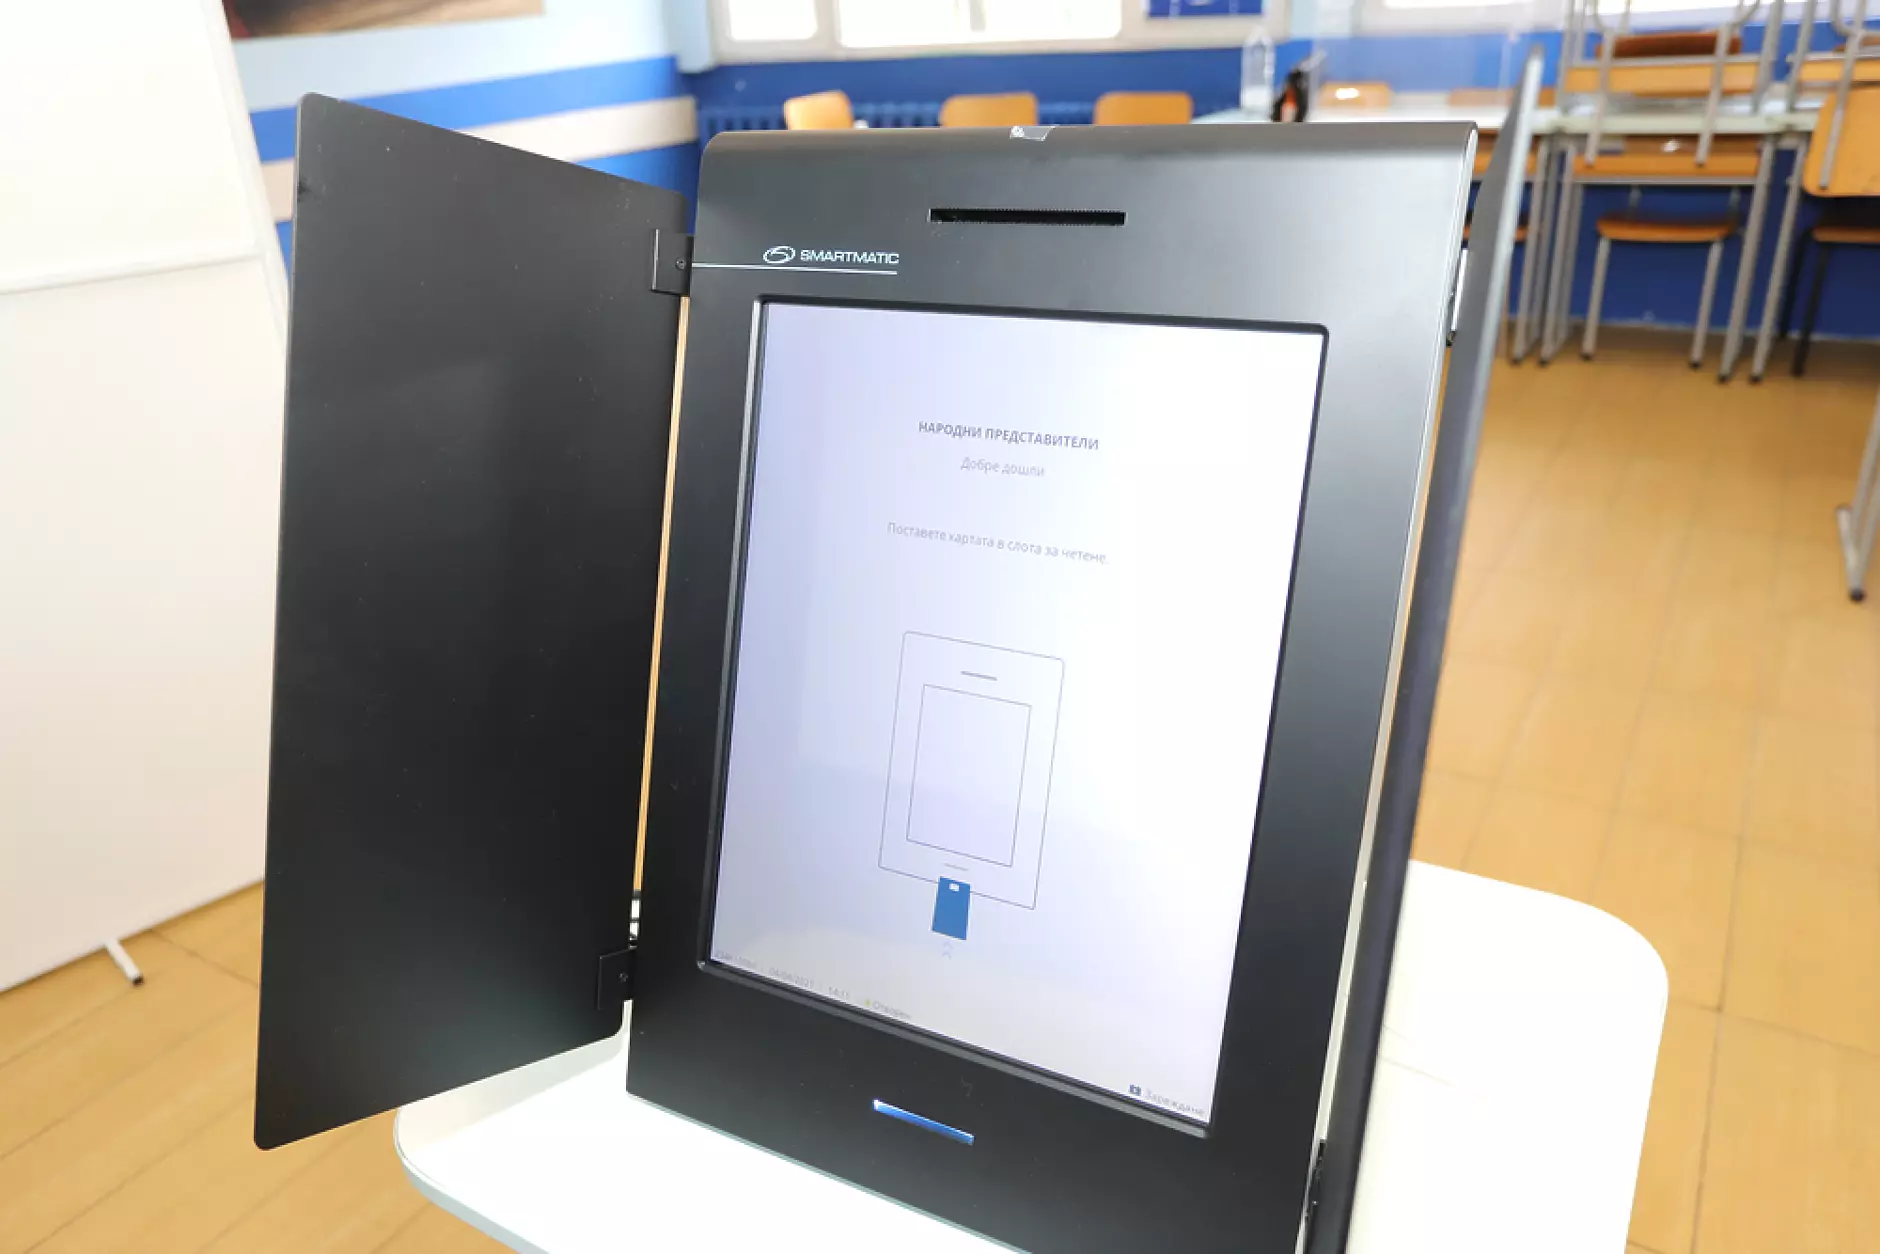  Демократична България обжалва пред ВАС решение на ЦИК за организацията на машинното гласуване